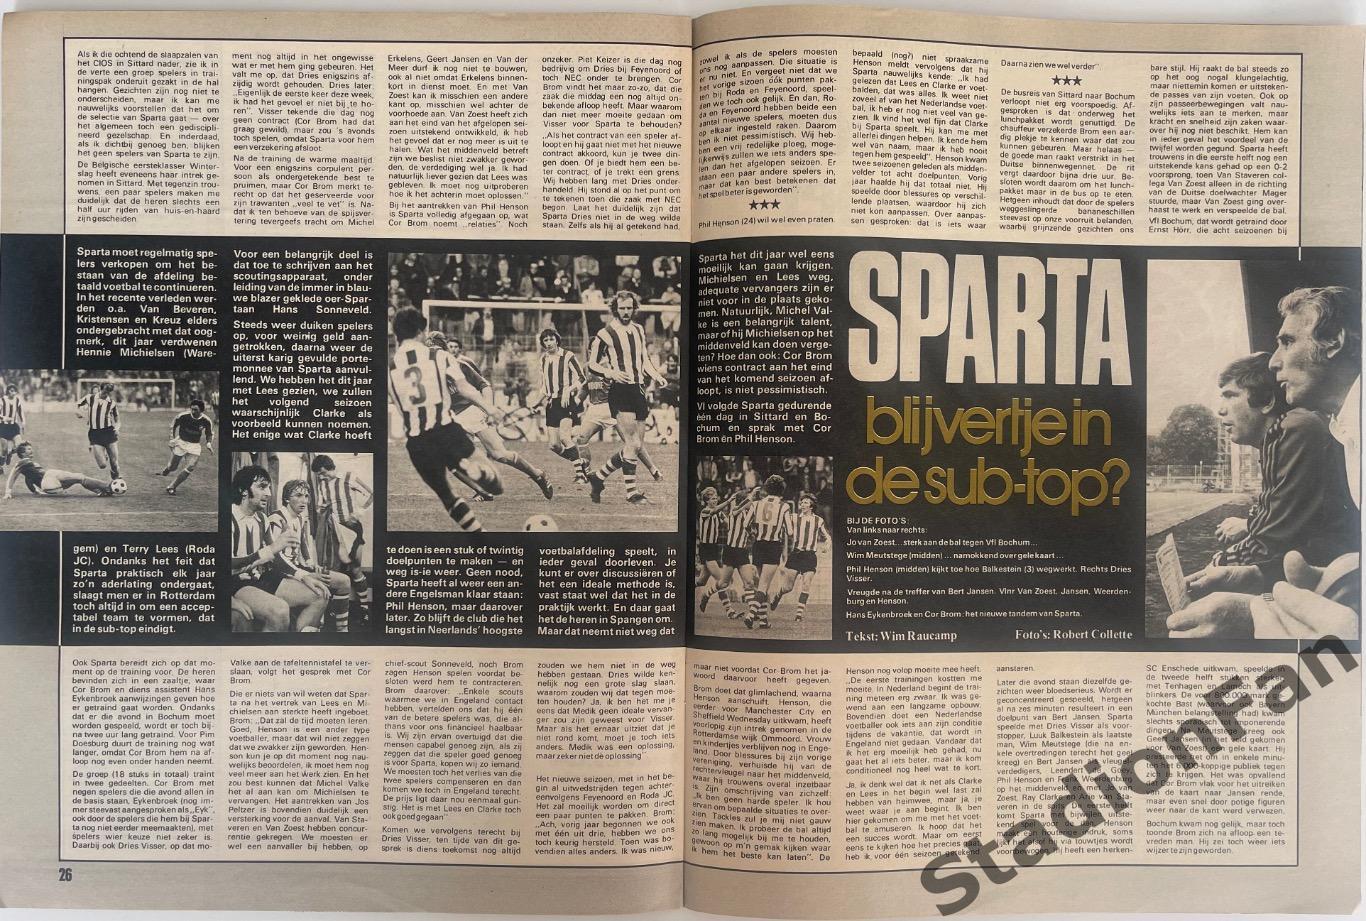 Журнал Voetbal nr.30 - 1977 год. 4